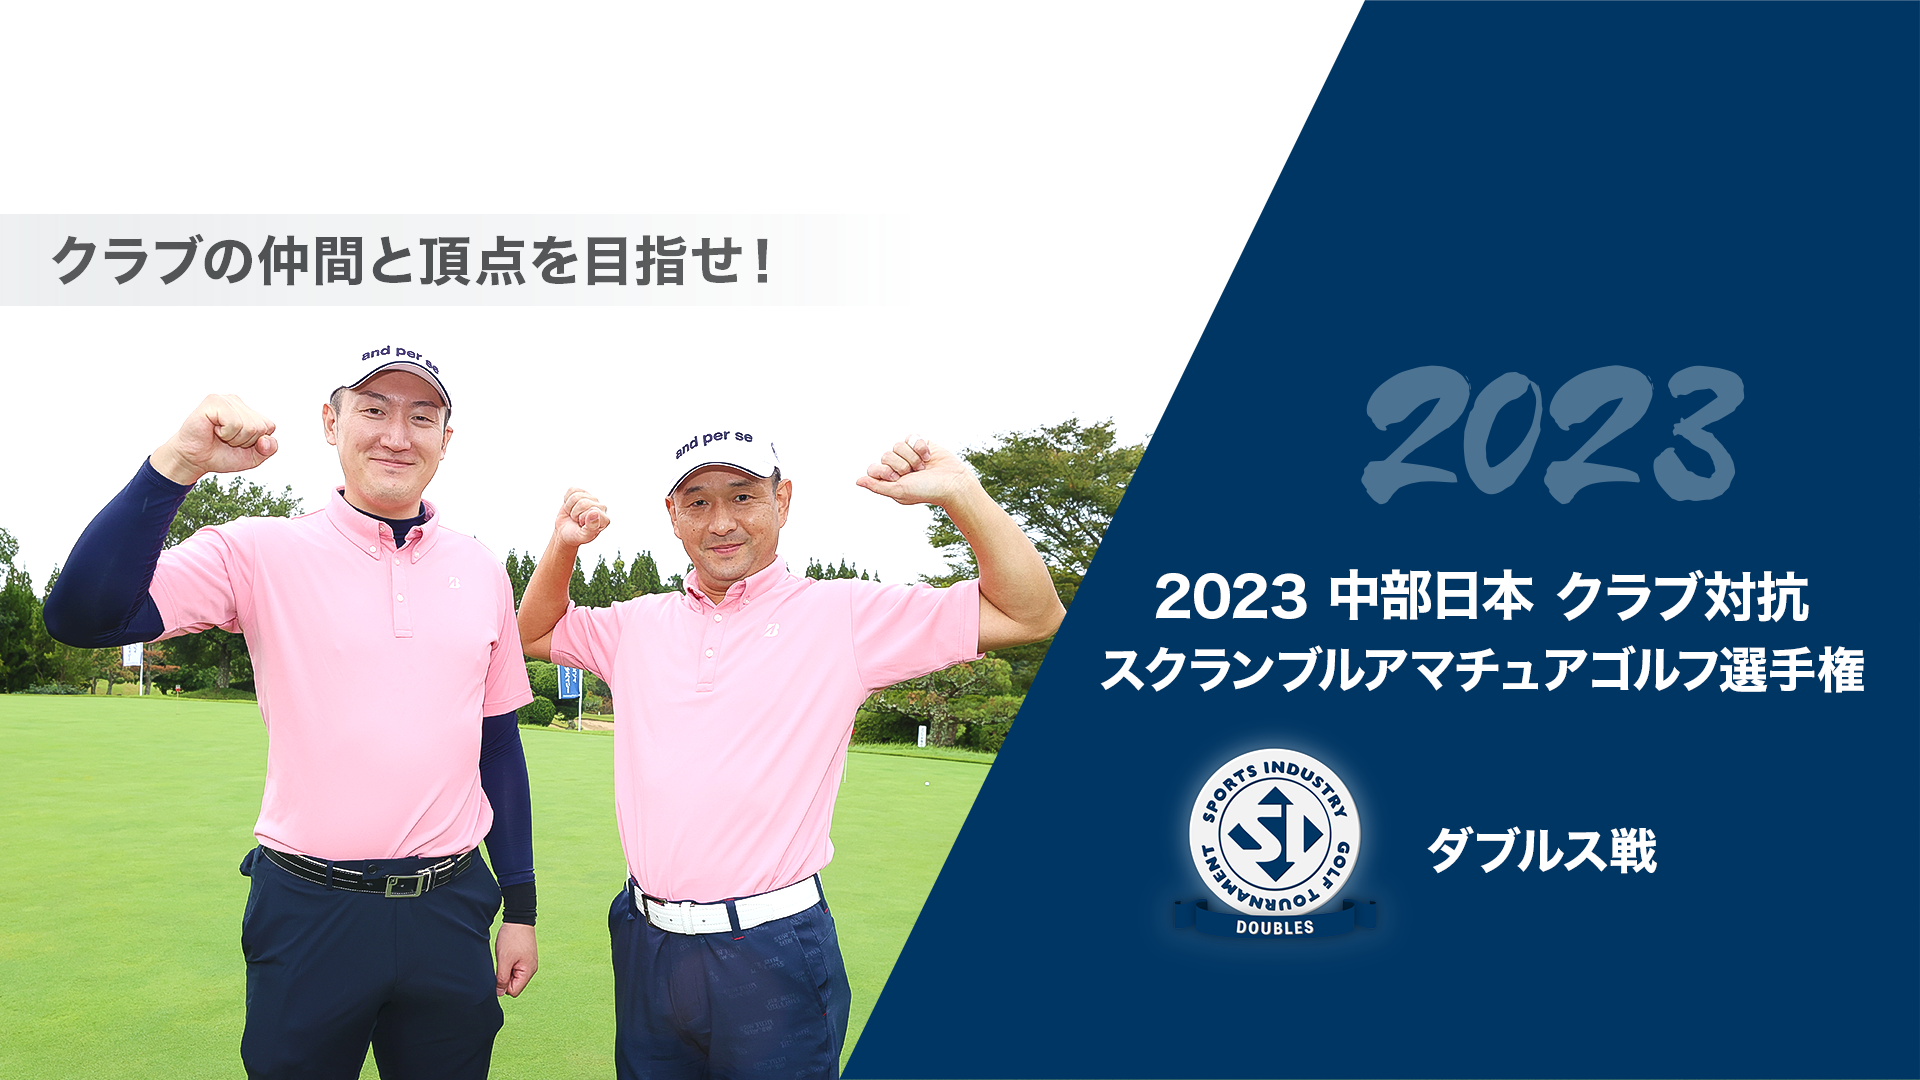 2023中部日本クラブ対抗スクランブルアマチュアゴルフ選手権_ダブルス戦